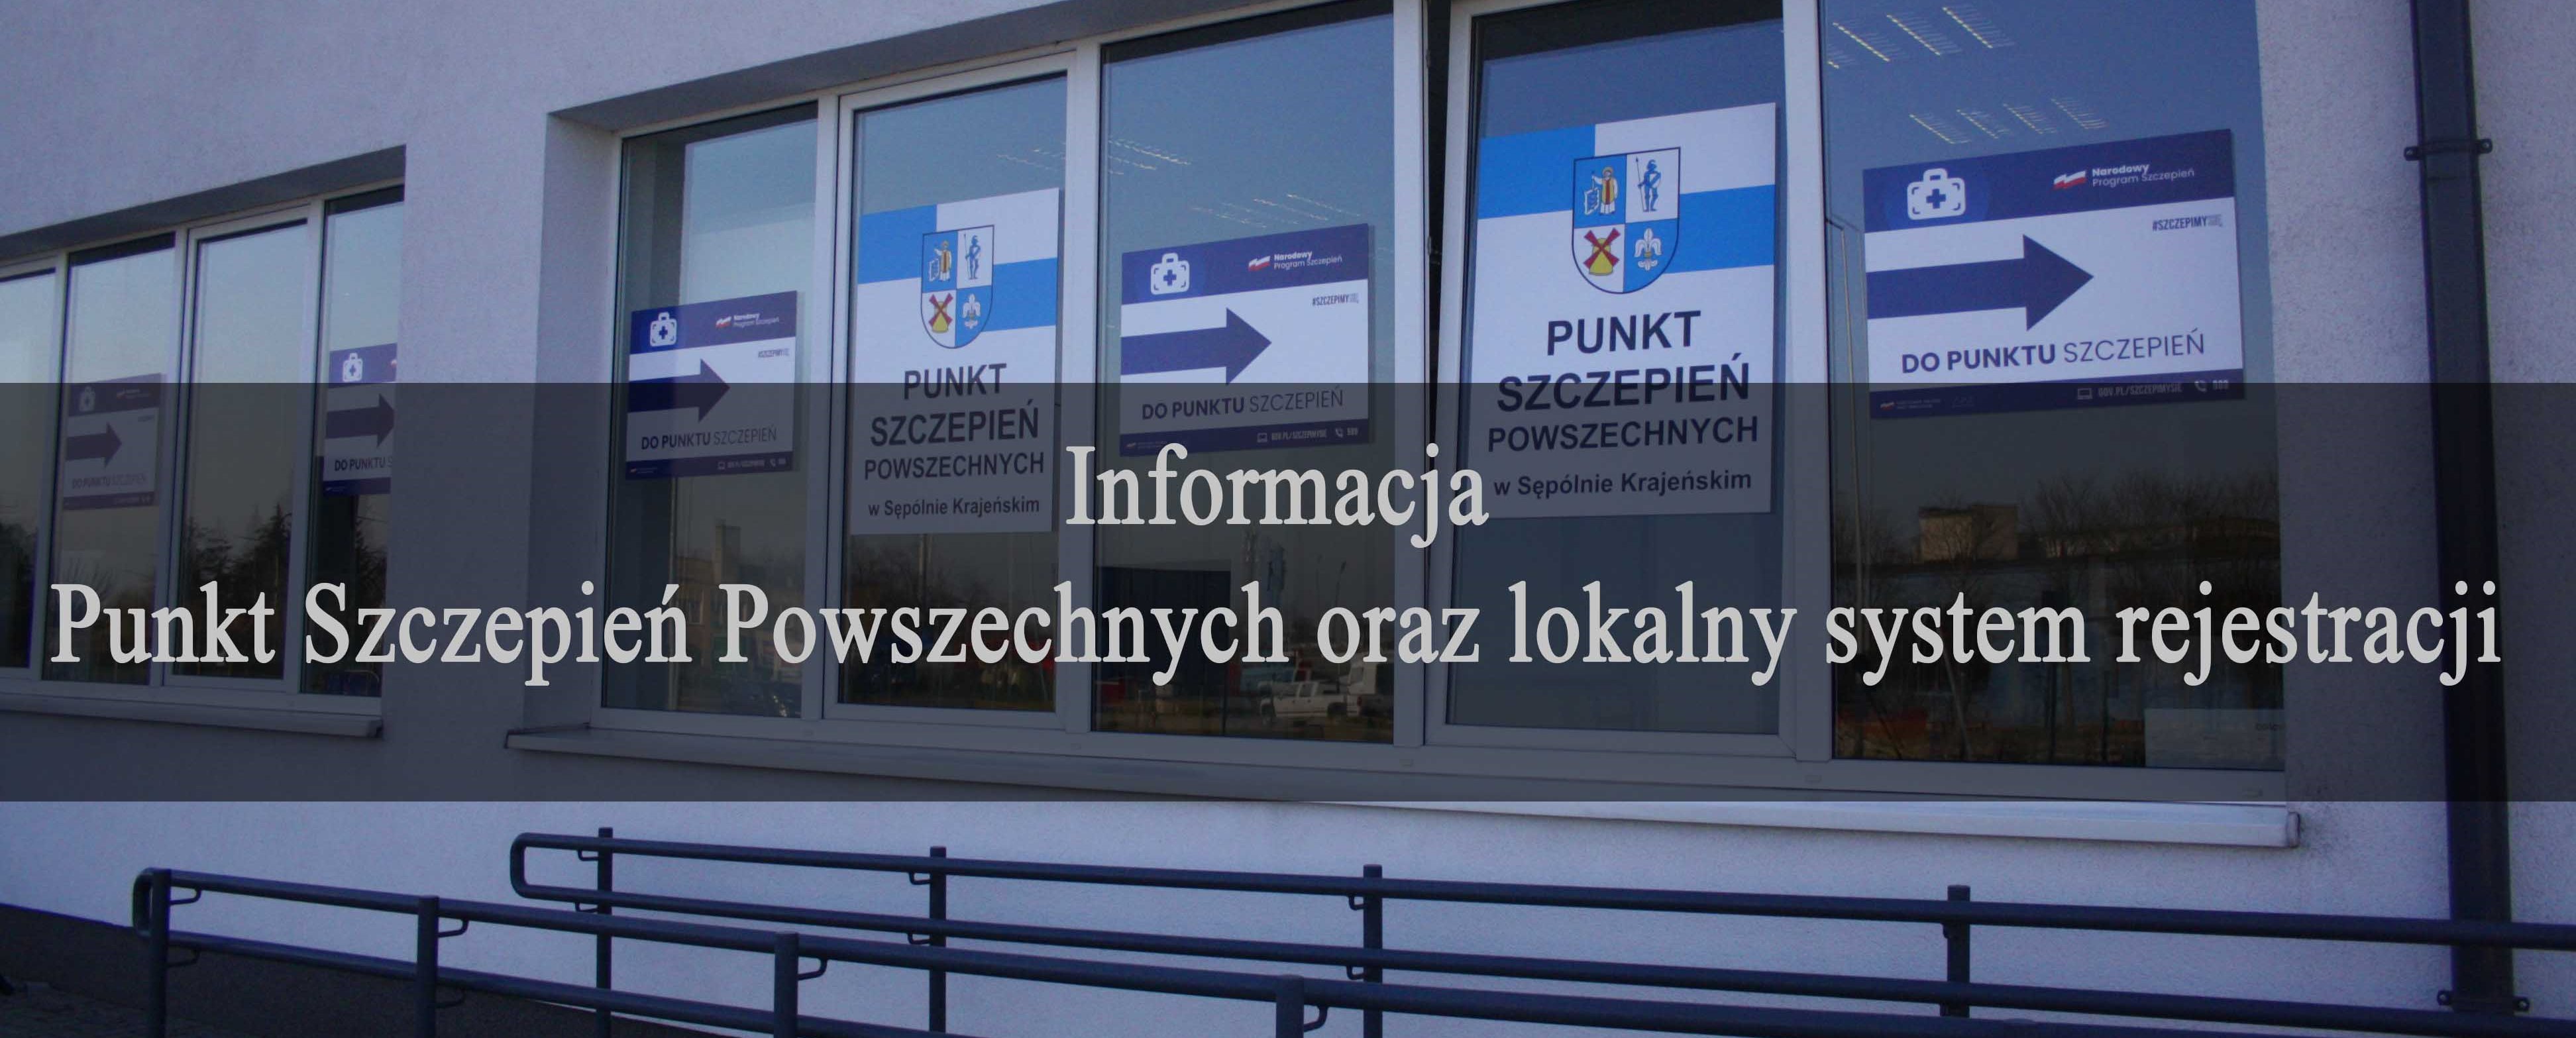 Informacja - Punkt Szczepień Powszechnych oraz lokalny system rejestracji